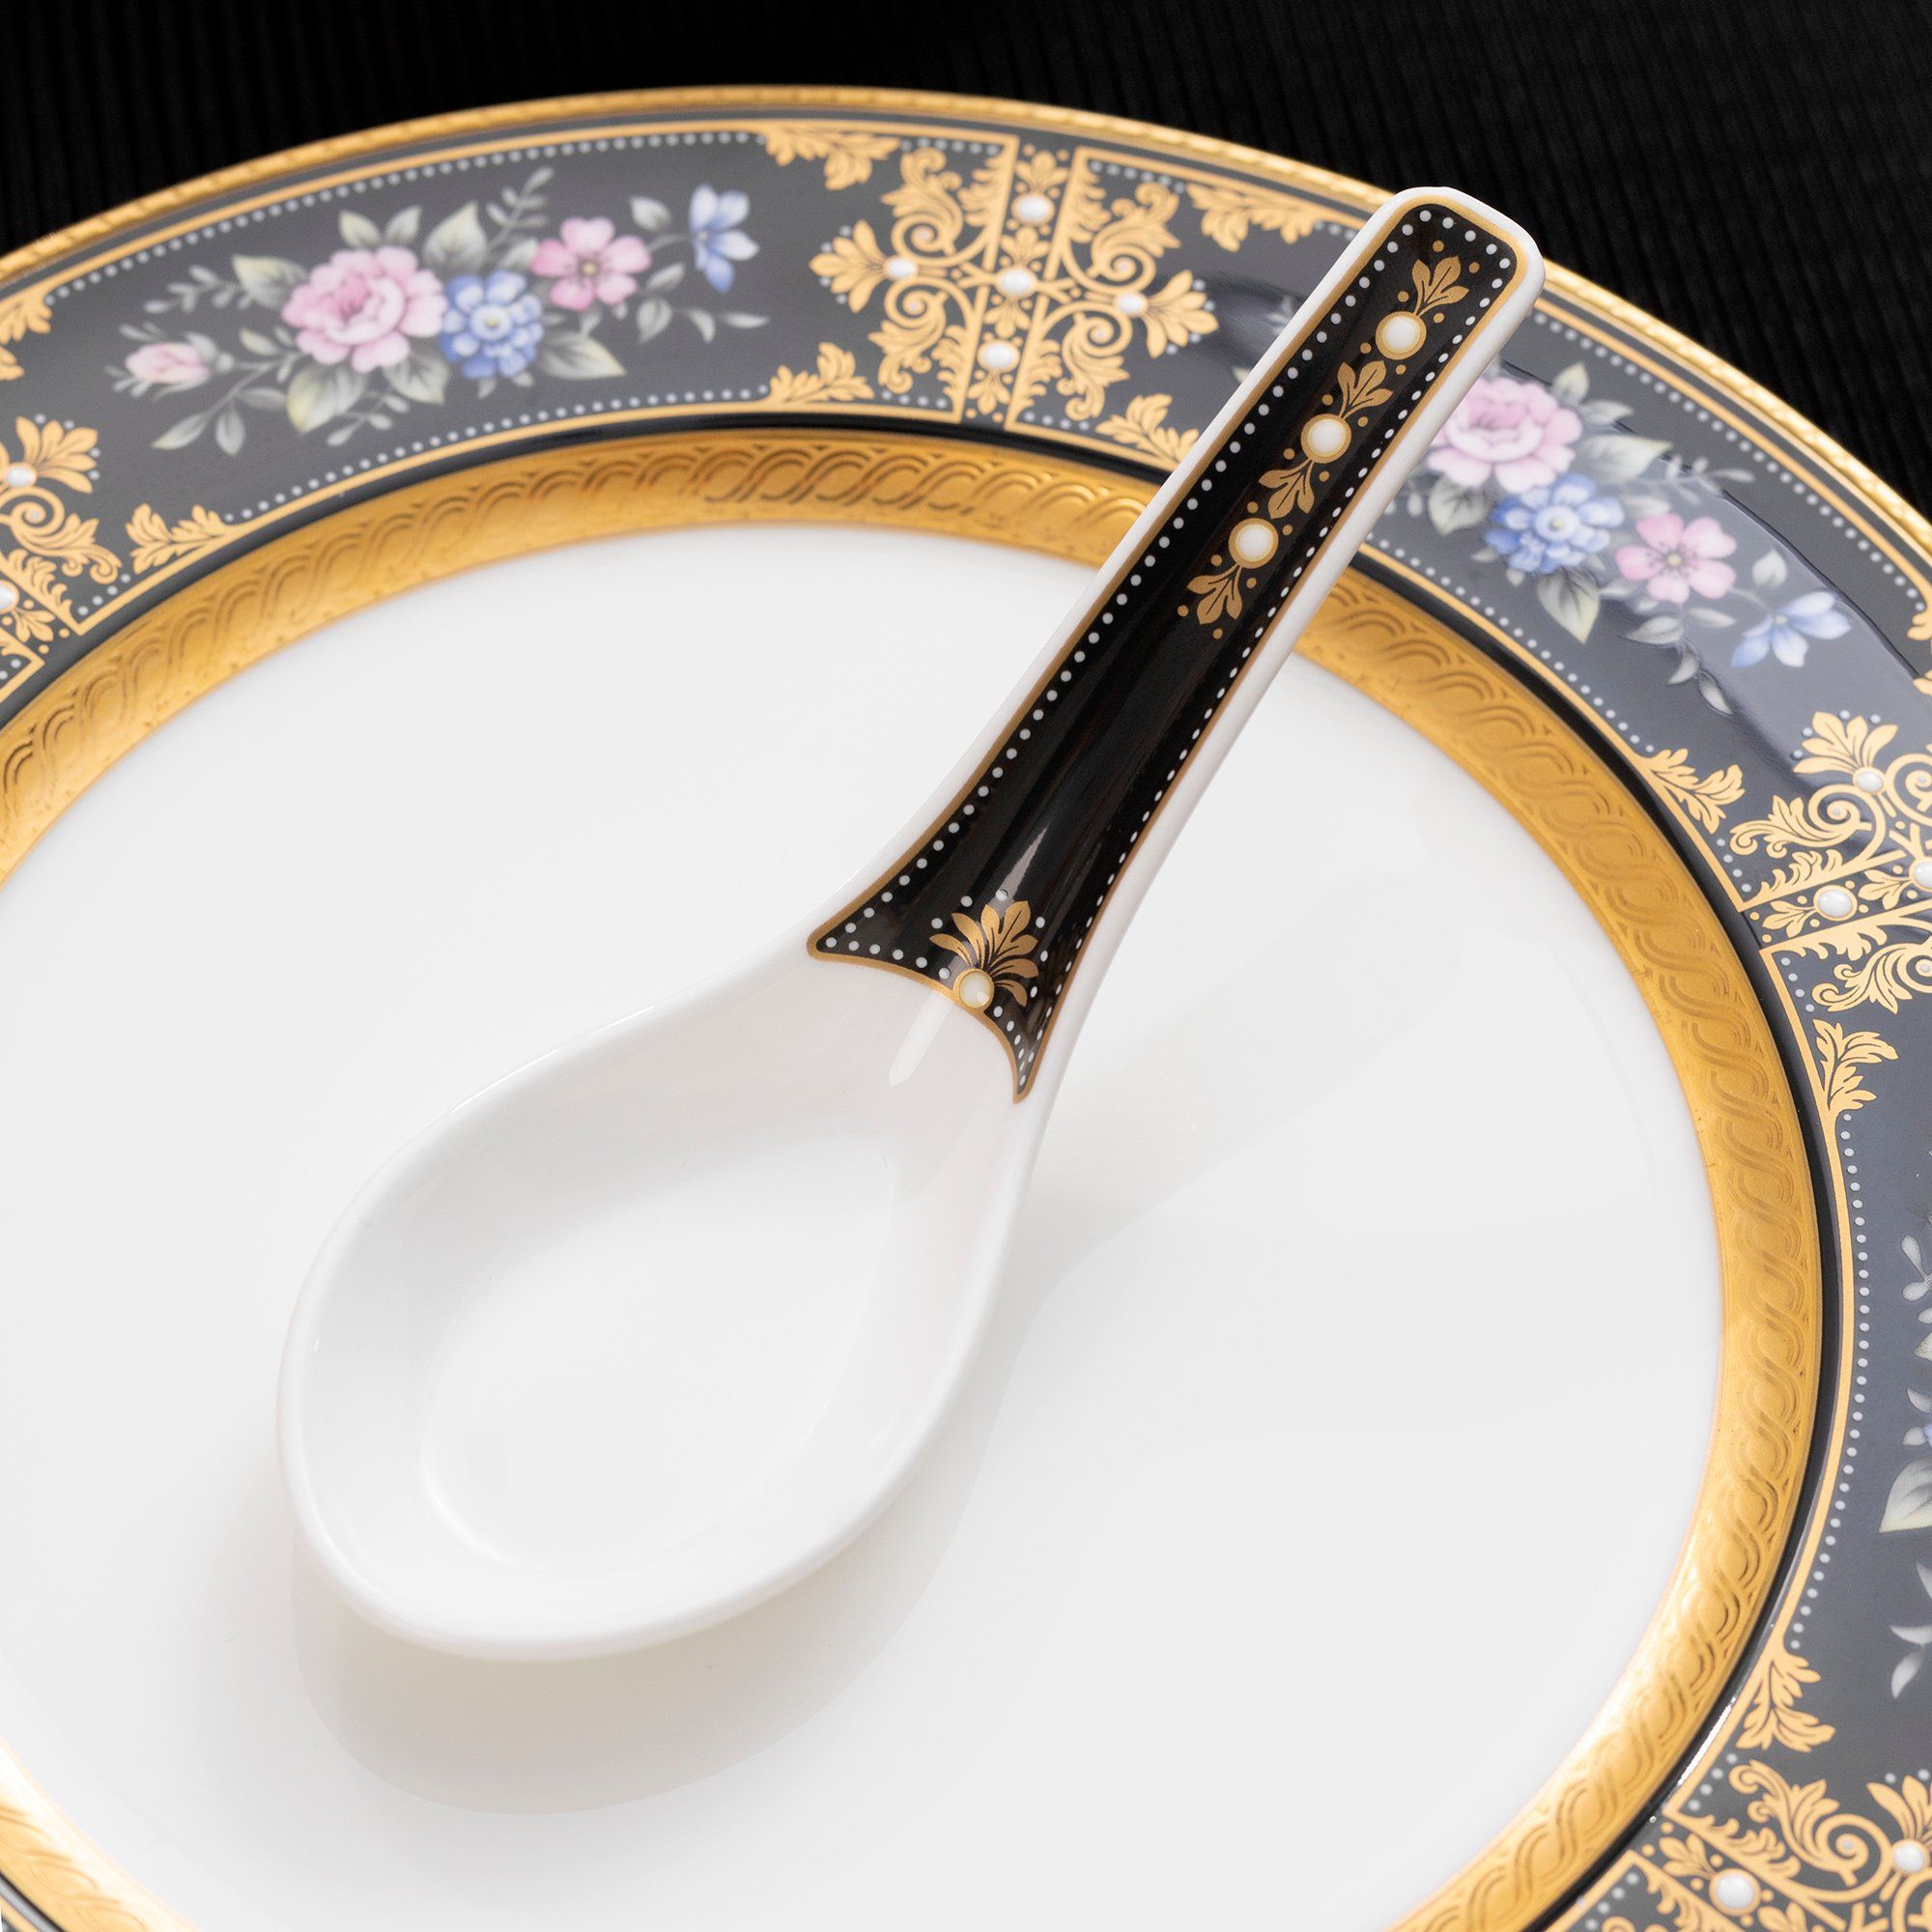  Đĩa tròn cỡ vừa loại đặc biệt đường kính 24cm sứ xương Nhật Bản | Evening Majesty 4818-1J-59516 